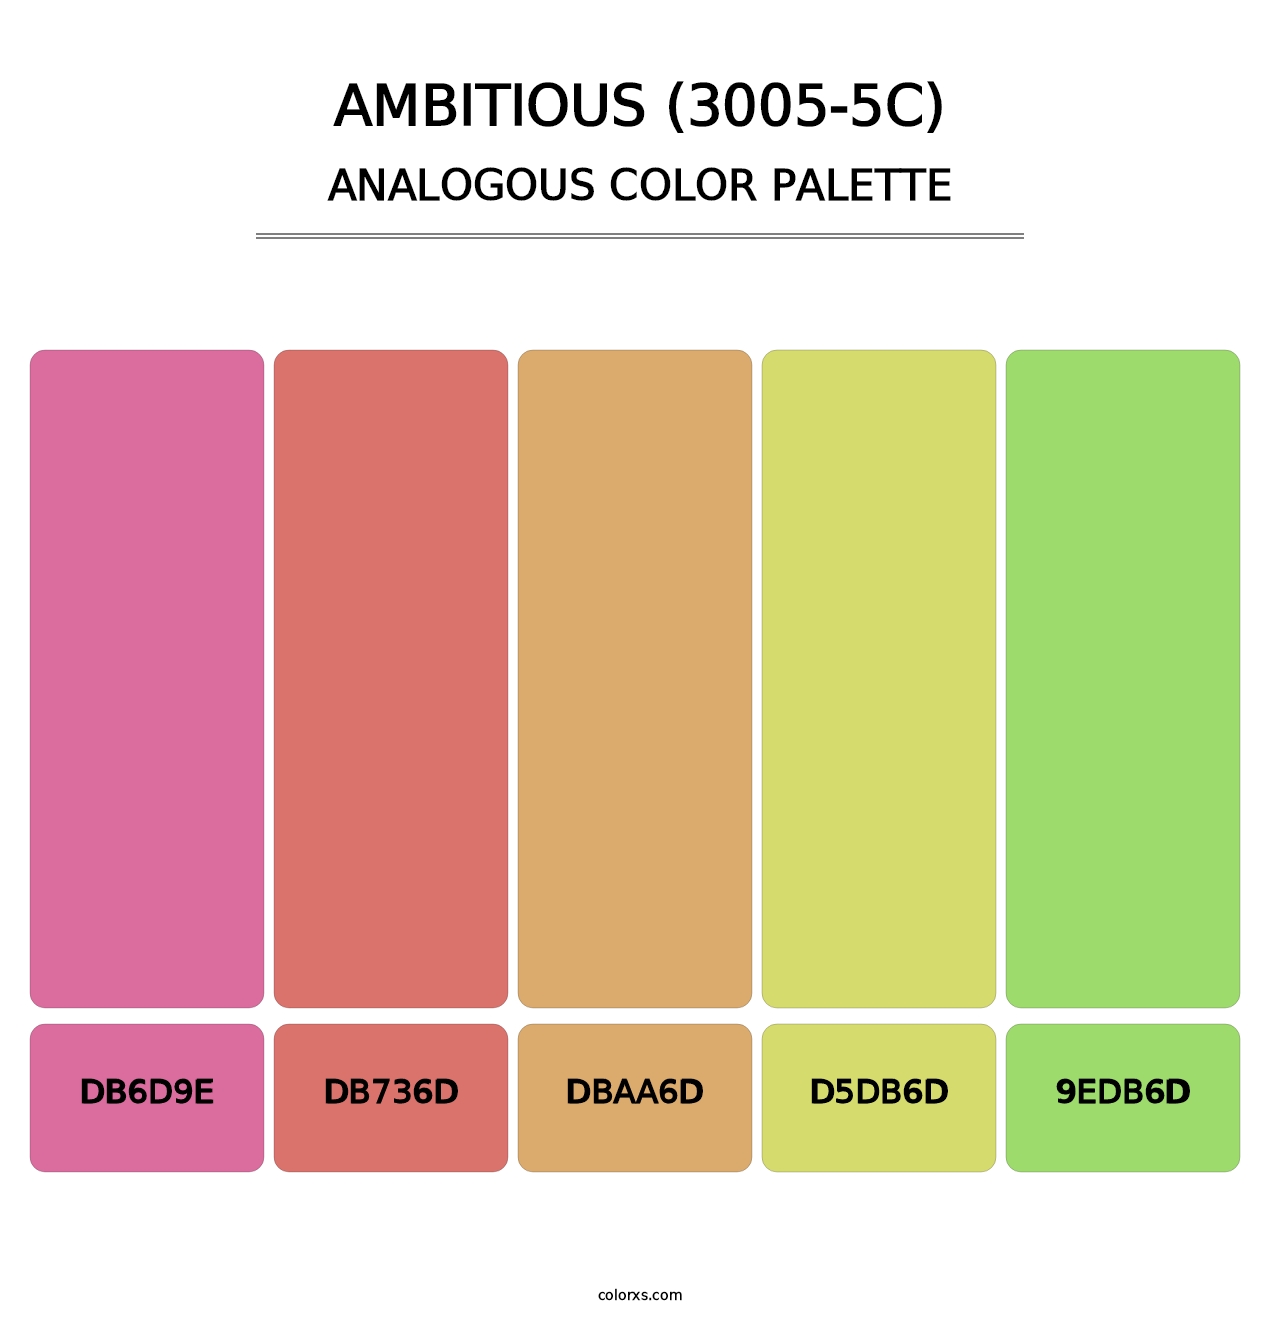 Ambitious (3005-5C) - Analogous Color Palette